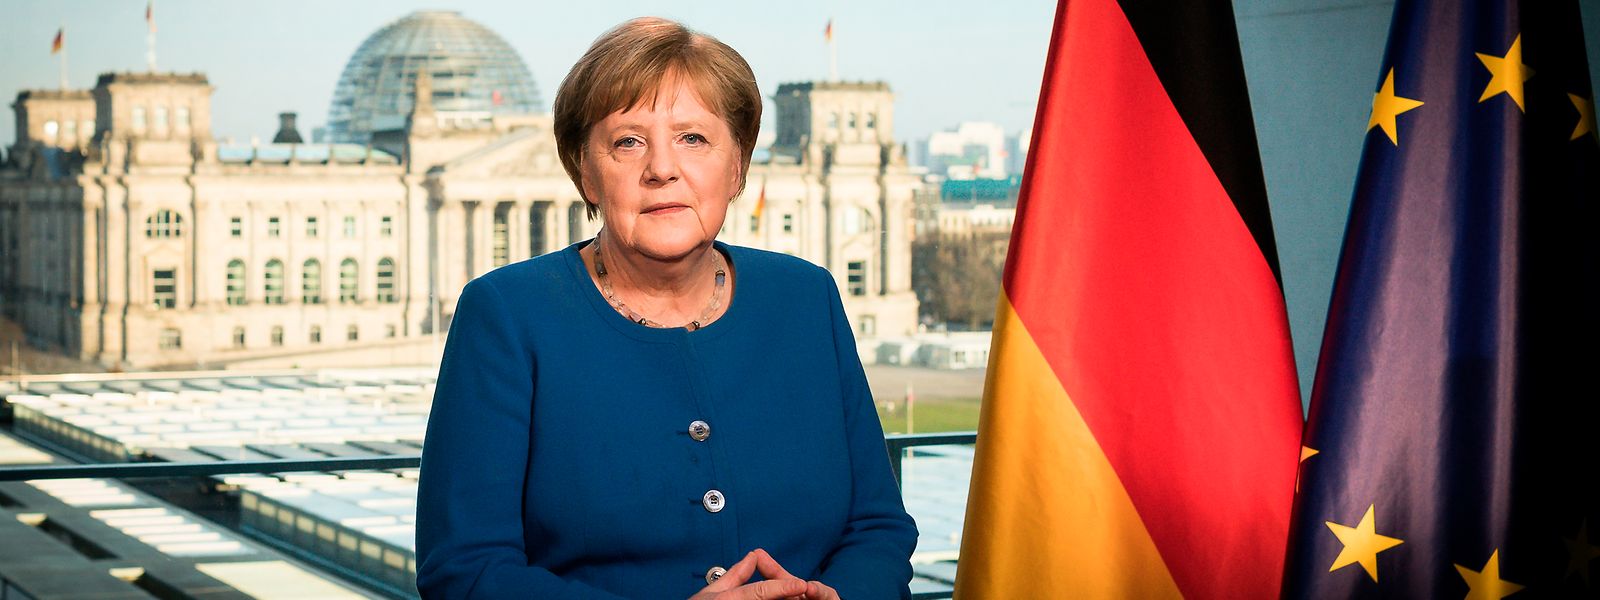 Ein eher seltenes Bild: Bundeskanzlerin Angela Merkel (CDU)  bei der Fernsehansprache im Bundeskanzleramt zum Verlauf der Corona-Pandemie.